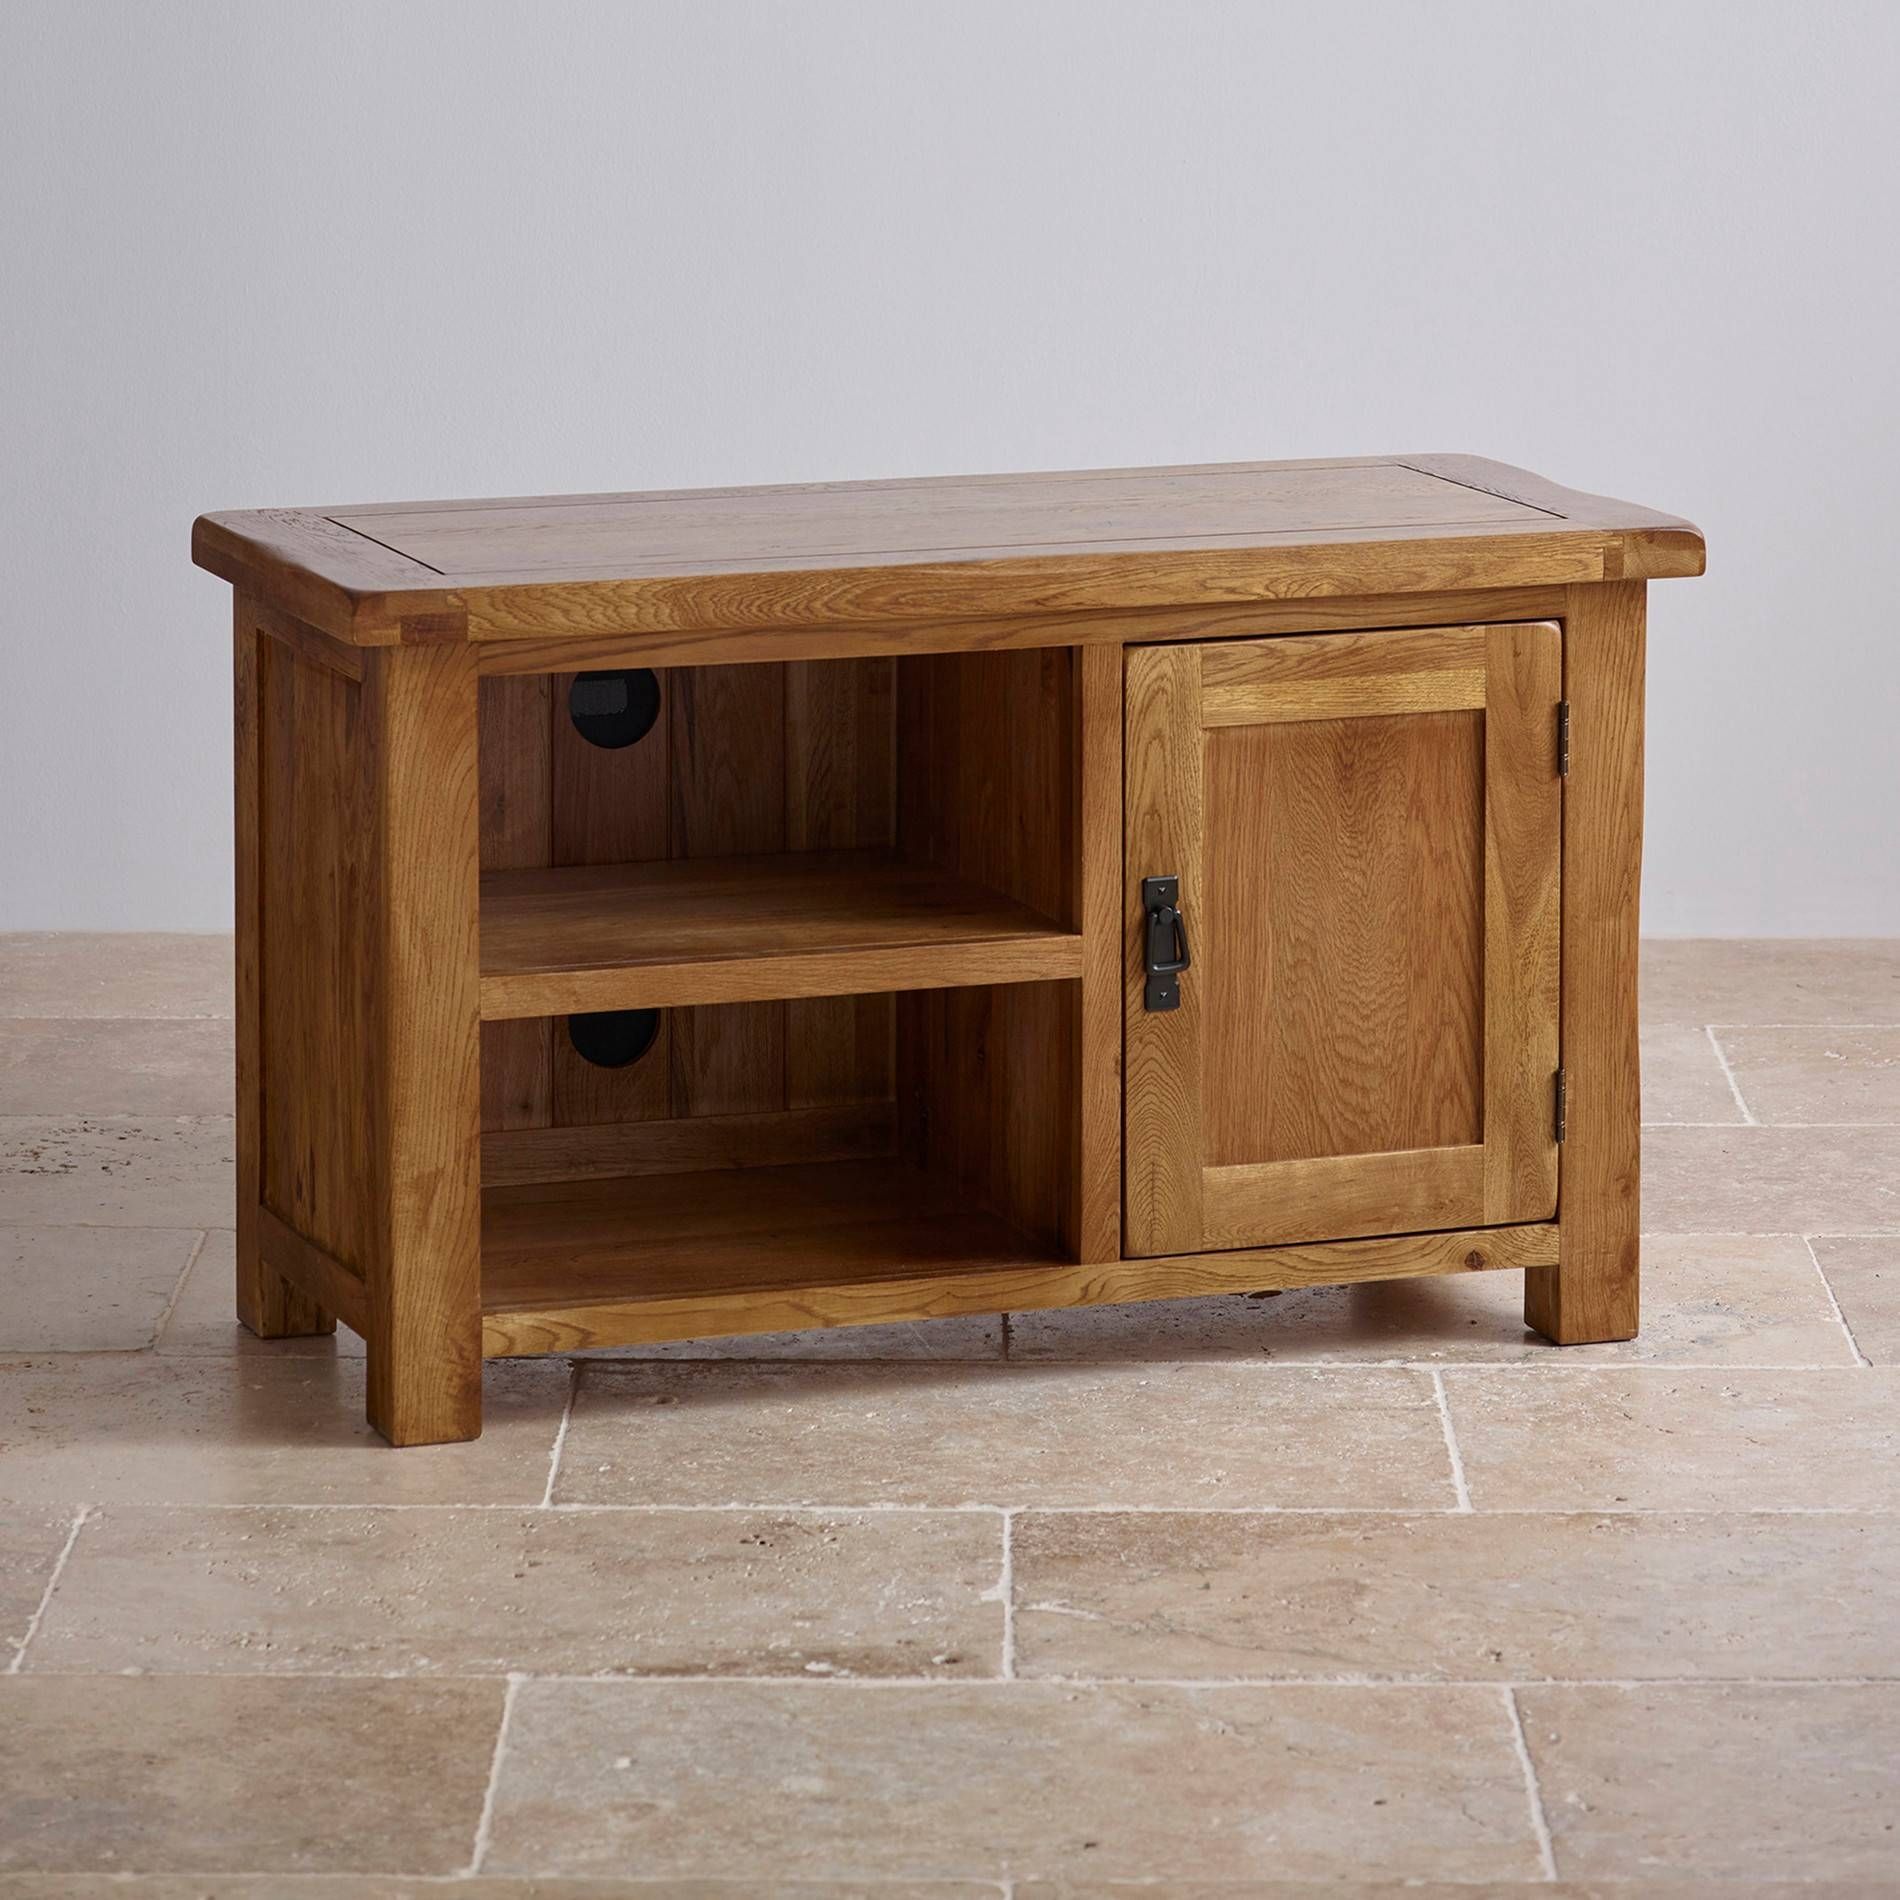 Original Rustic Tv Cabinet In Solid Oak | Oak Furniture Land Regarding Rustic Oak Tv Stands (View 1 of 15)